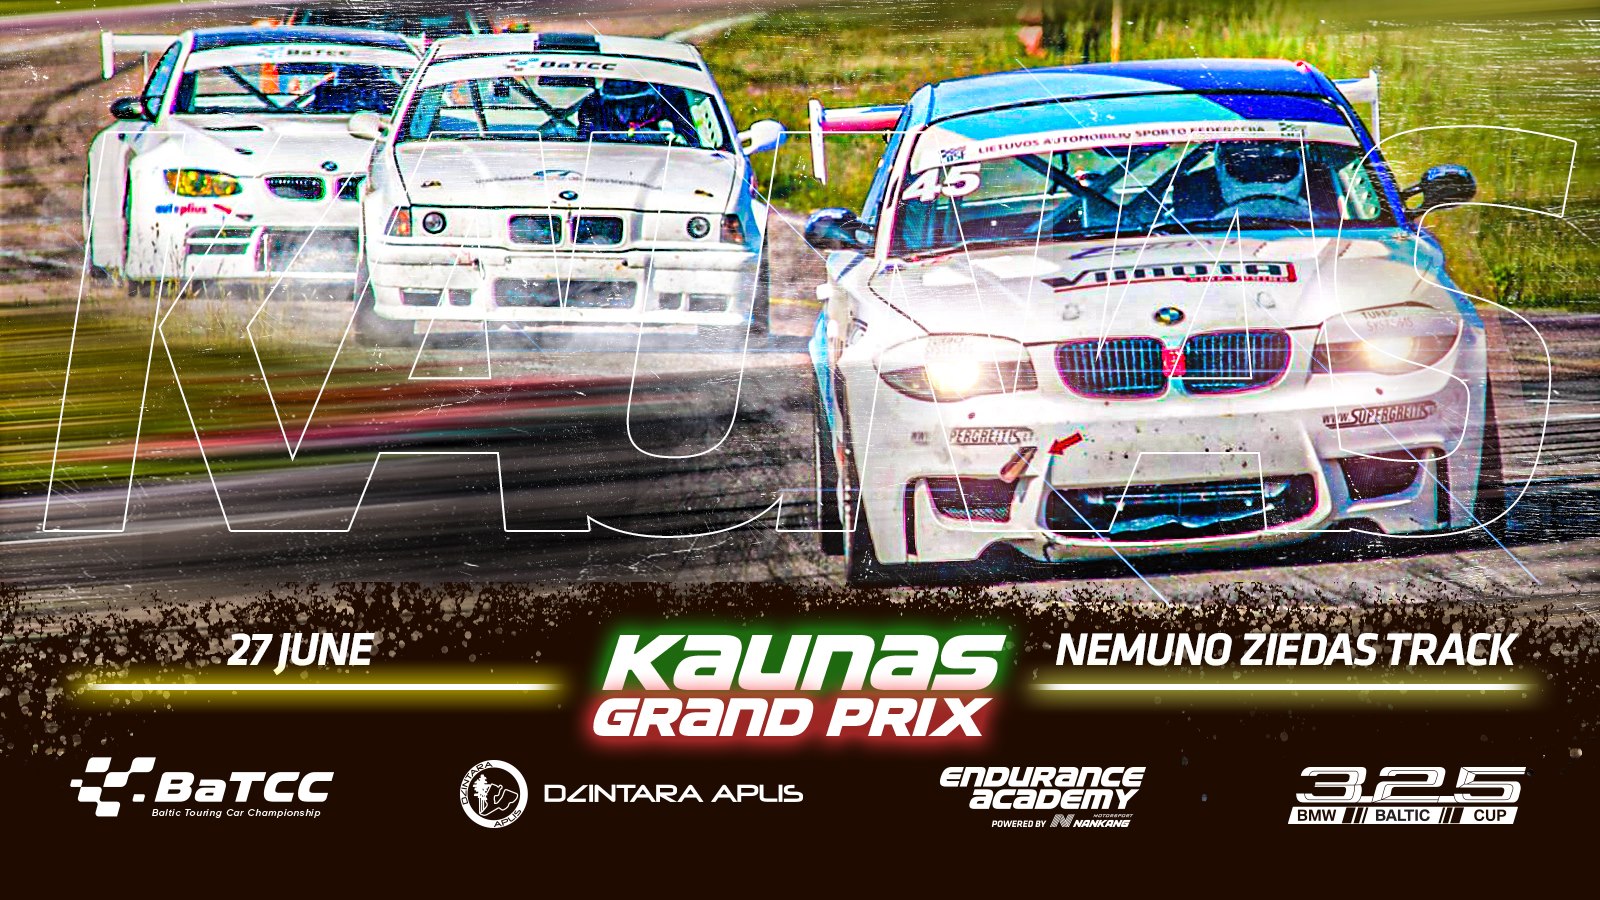 Kaunas Grand Prix